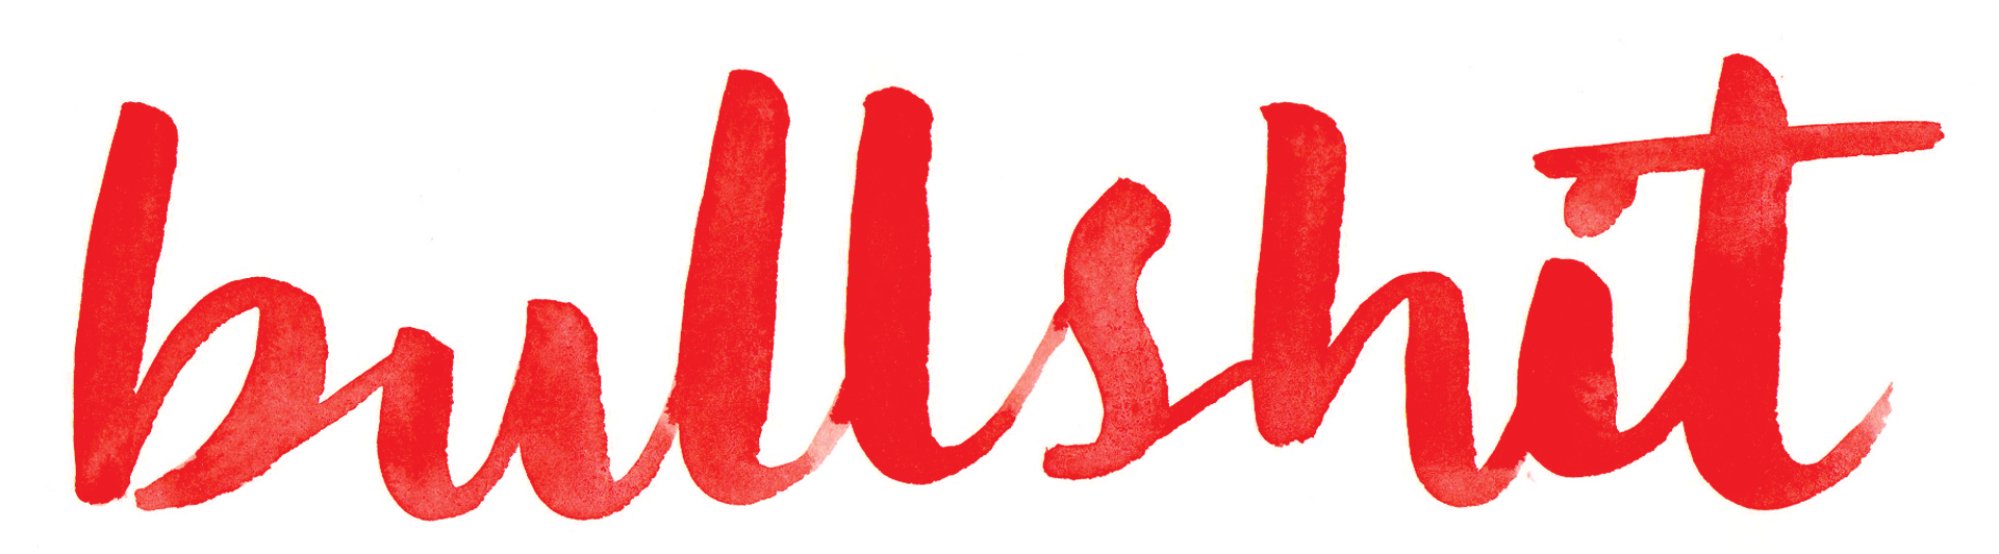 The word "bullshit" in red cursive lettering.